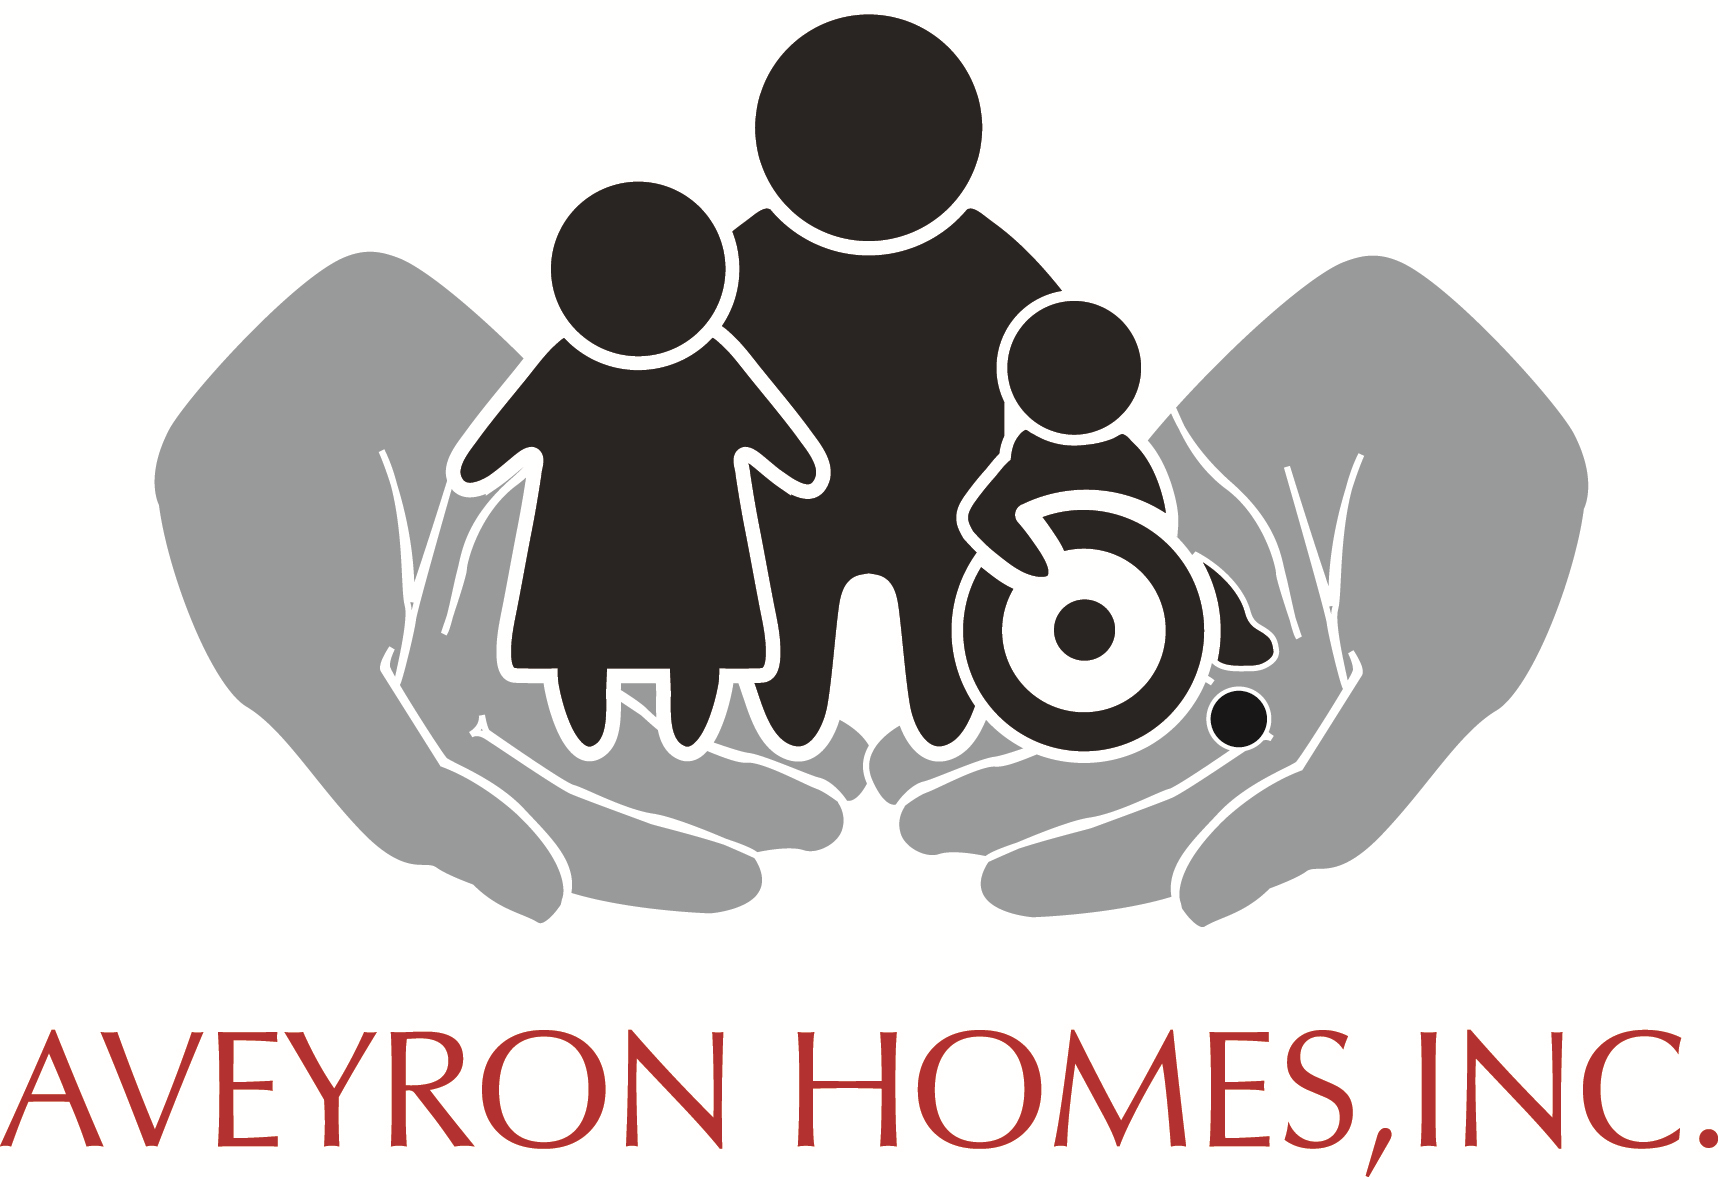 Aveyron Homes, Inc. logo